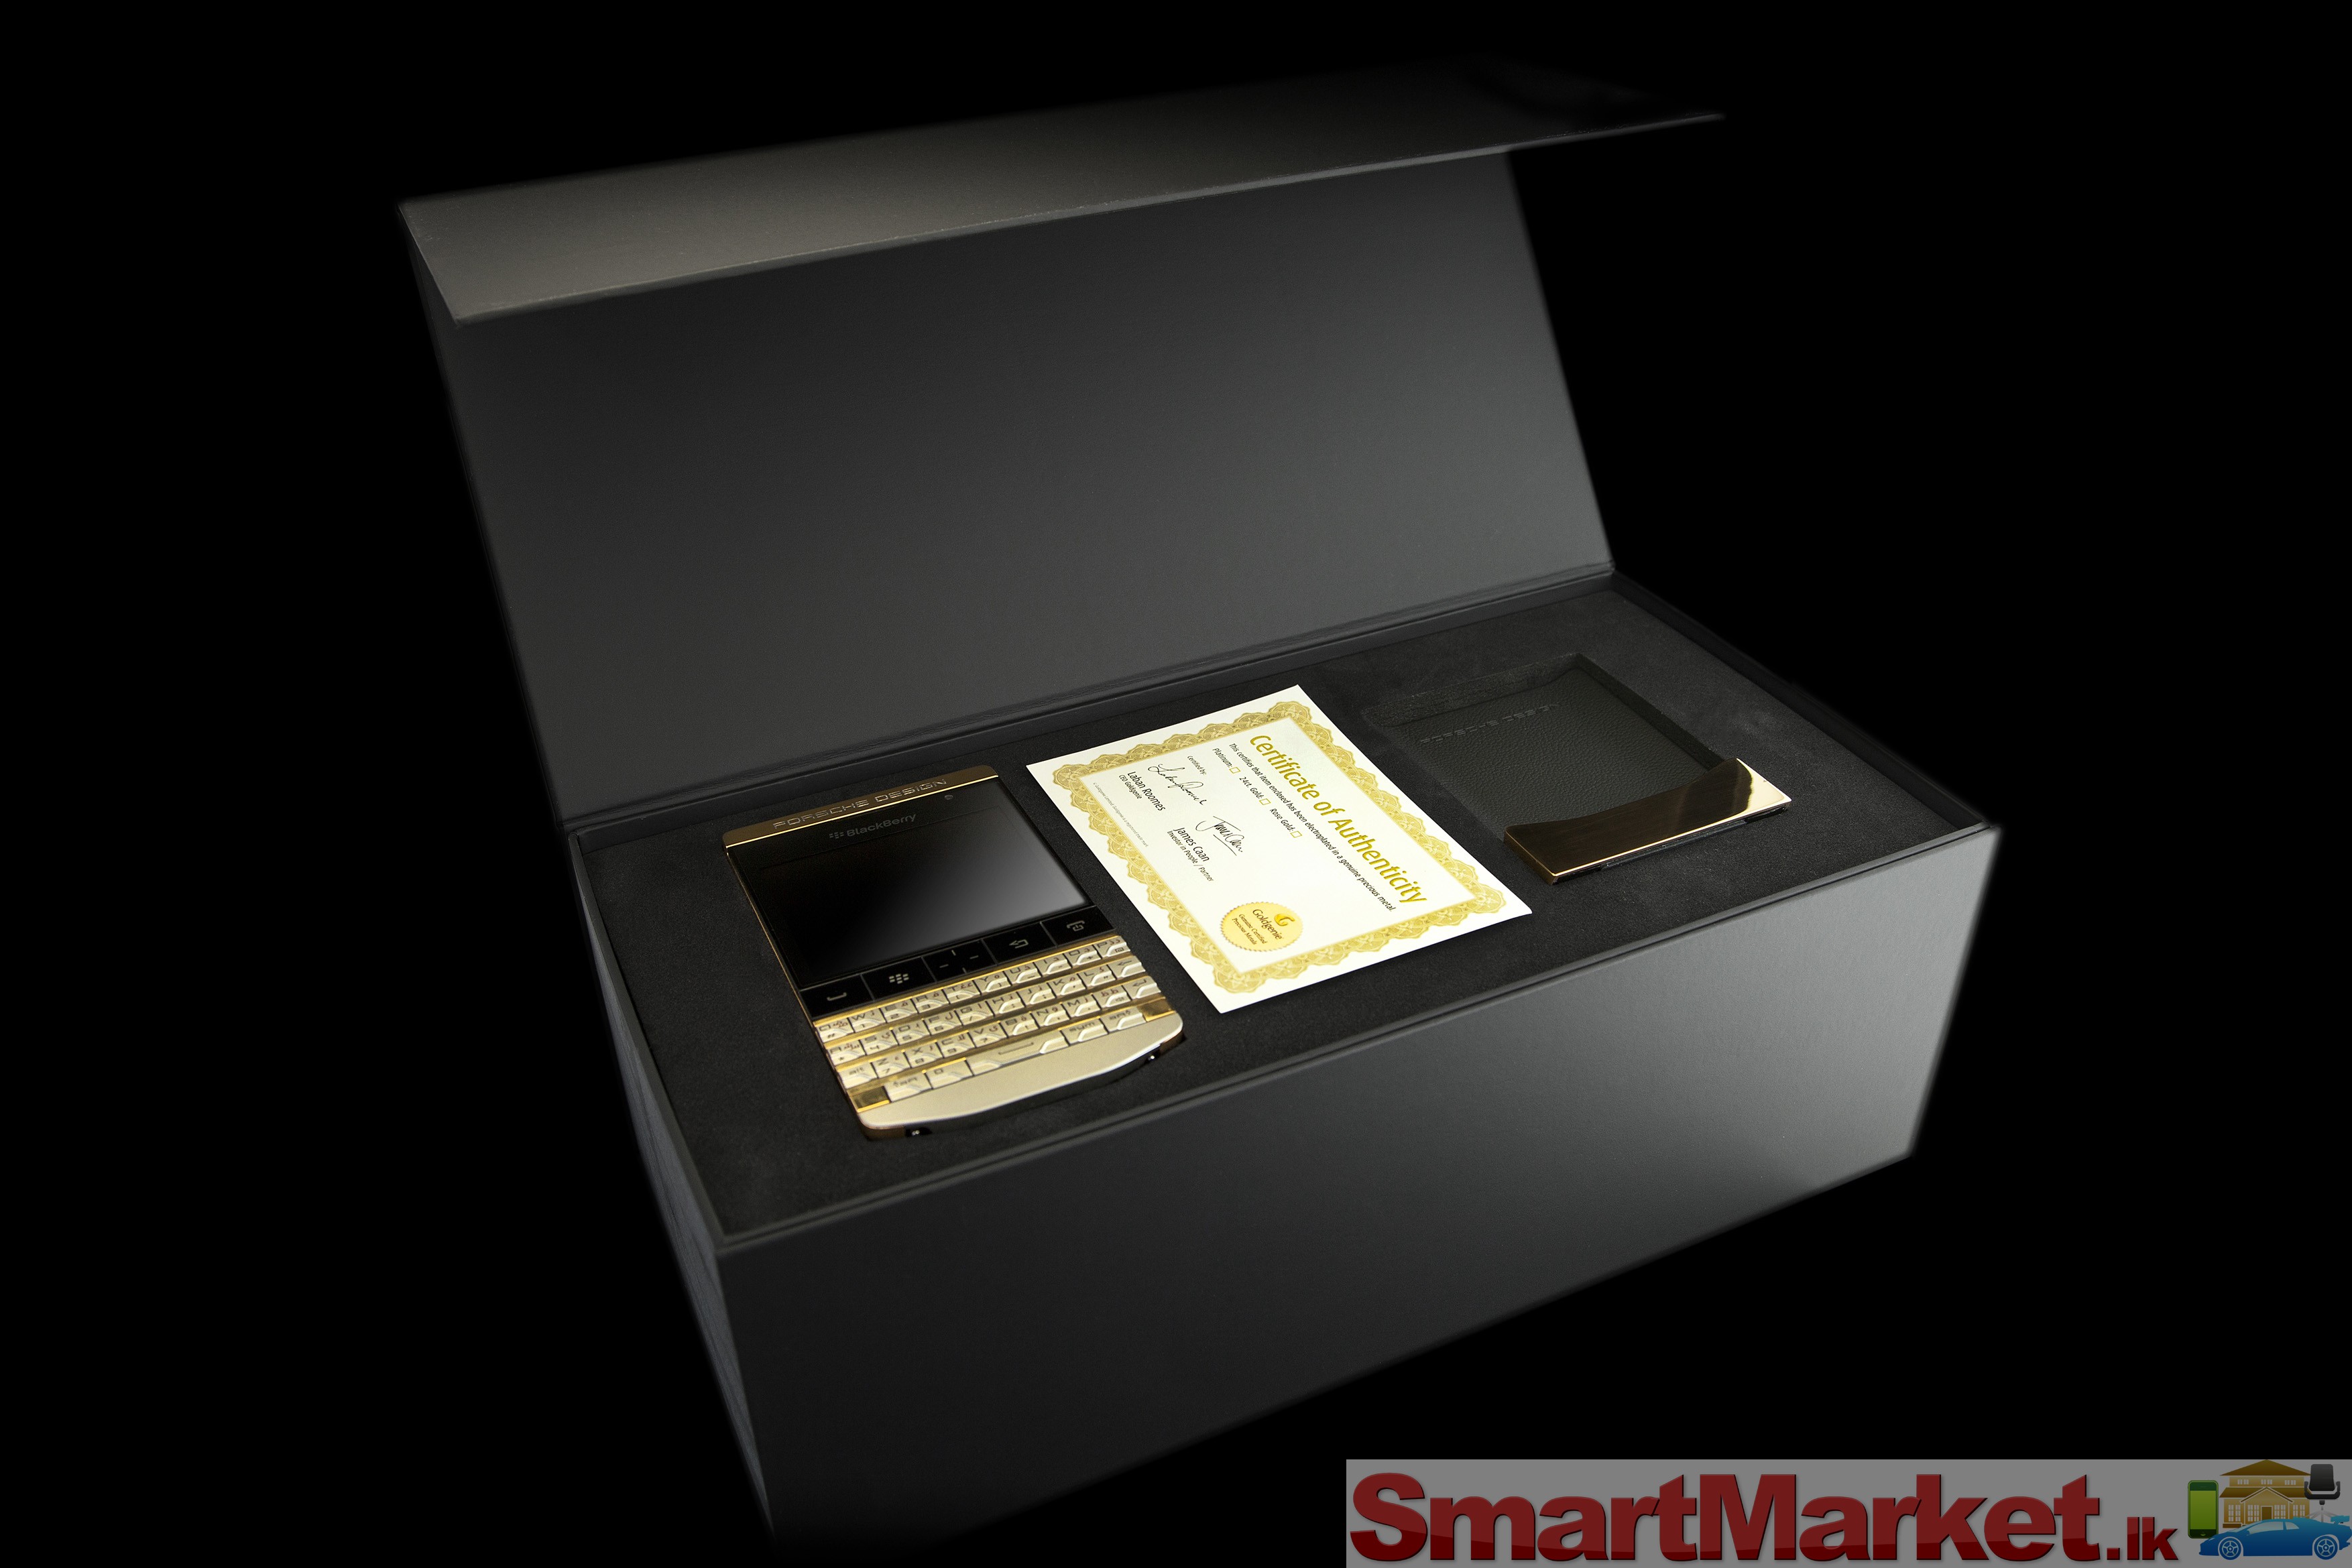 Fs: Blackberry Porsche P9981 & Gold , Blackberry Q10 & Gold , Blackberry Q5 , Blackberry Z10 , Also comes in arabic keypad